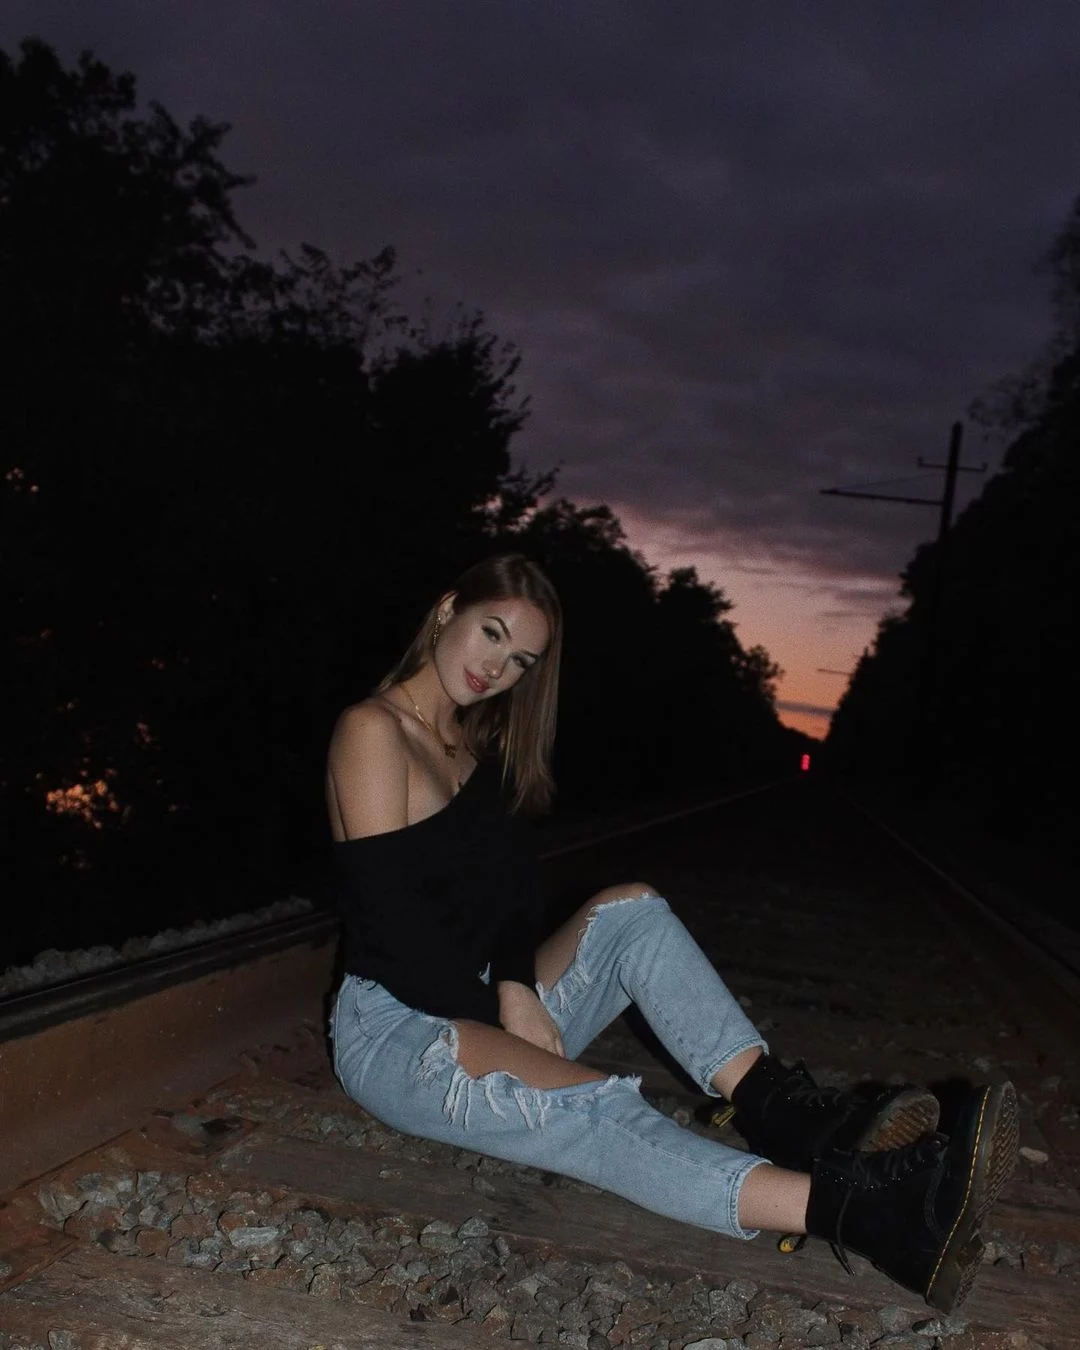 Skylar Bri sitting on a railway track